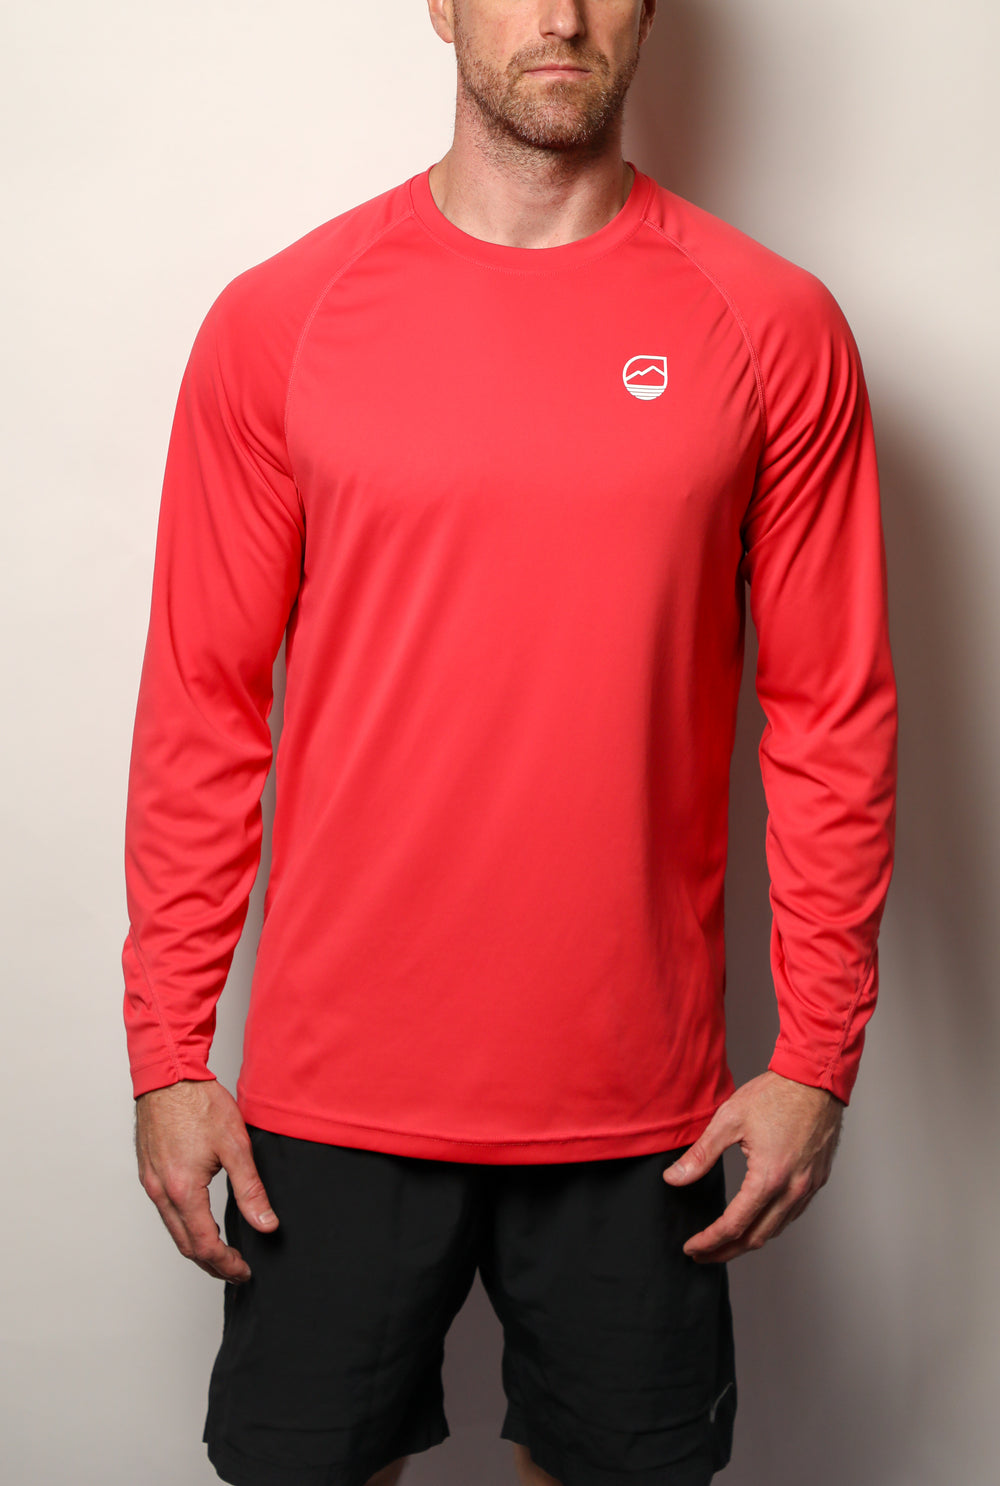 Men's Shoreline Lightweight Long Sleeve Sun Shirt UPF 50+